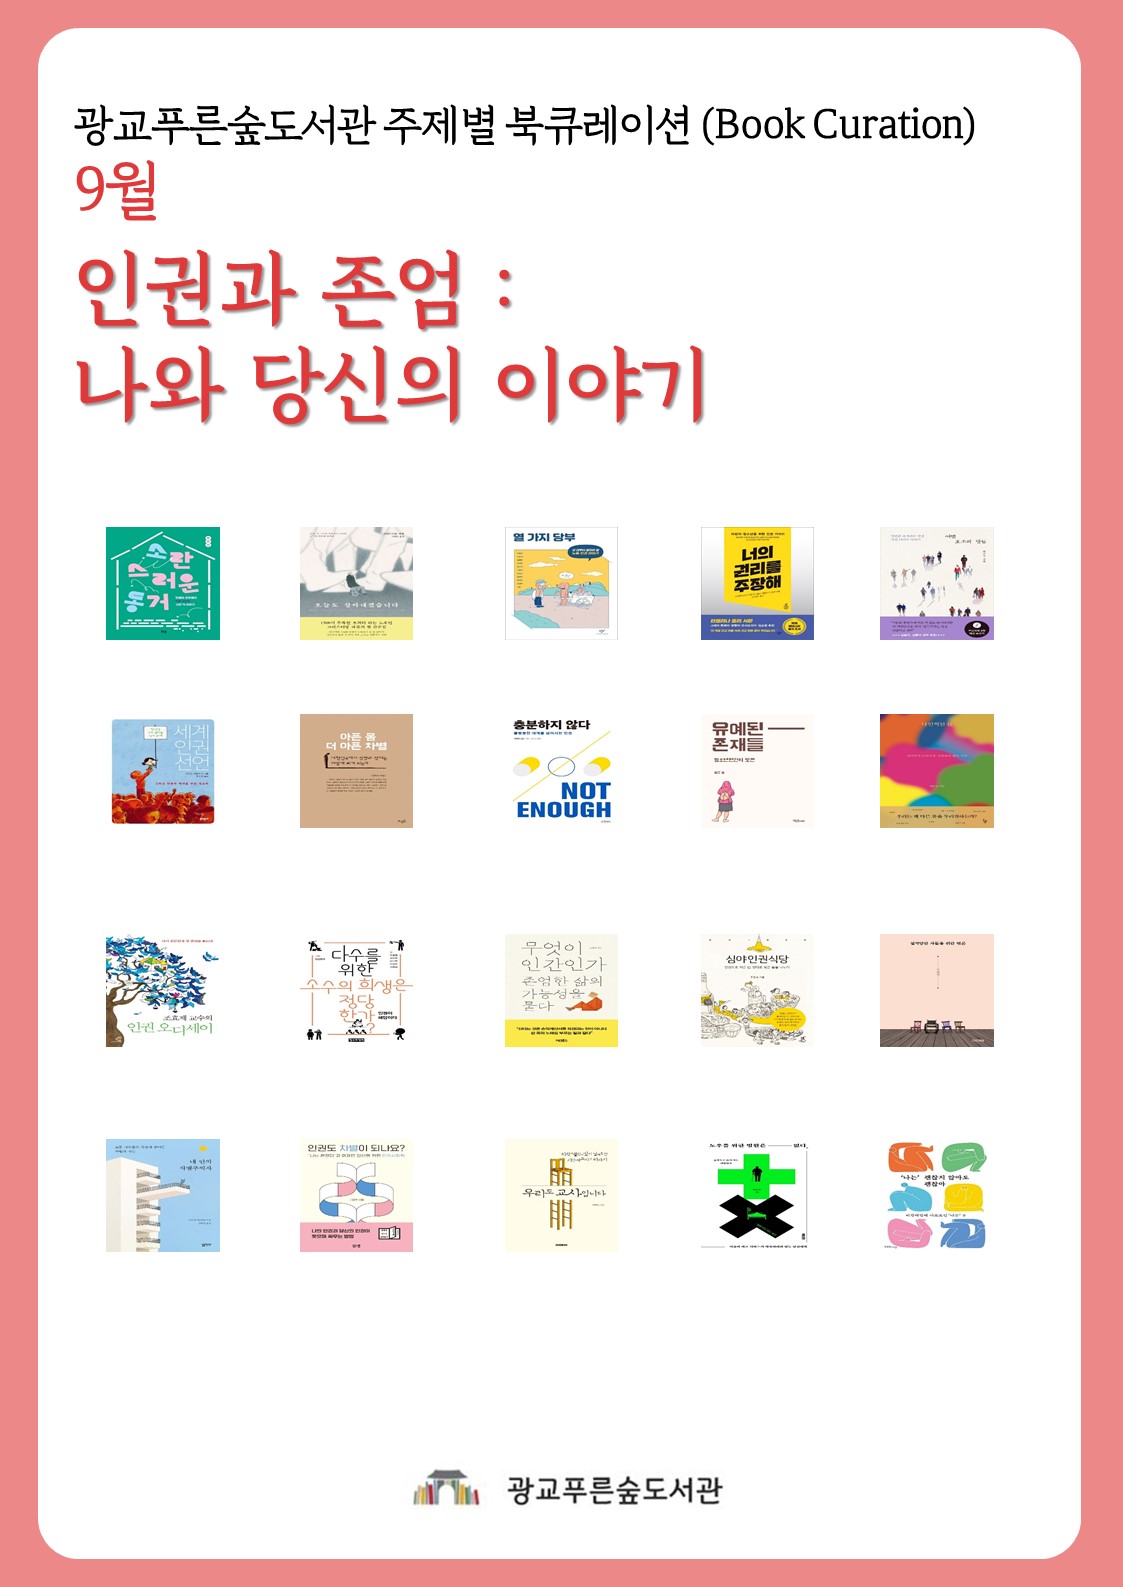 광교푸른숲도서관주제별북큐레이션안내문(9월).jpg